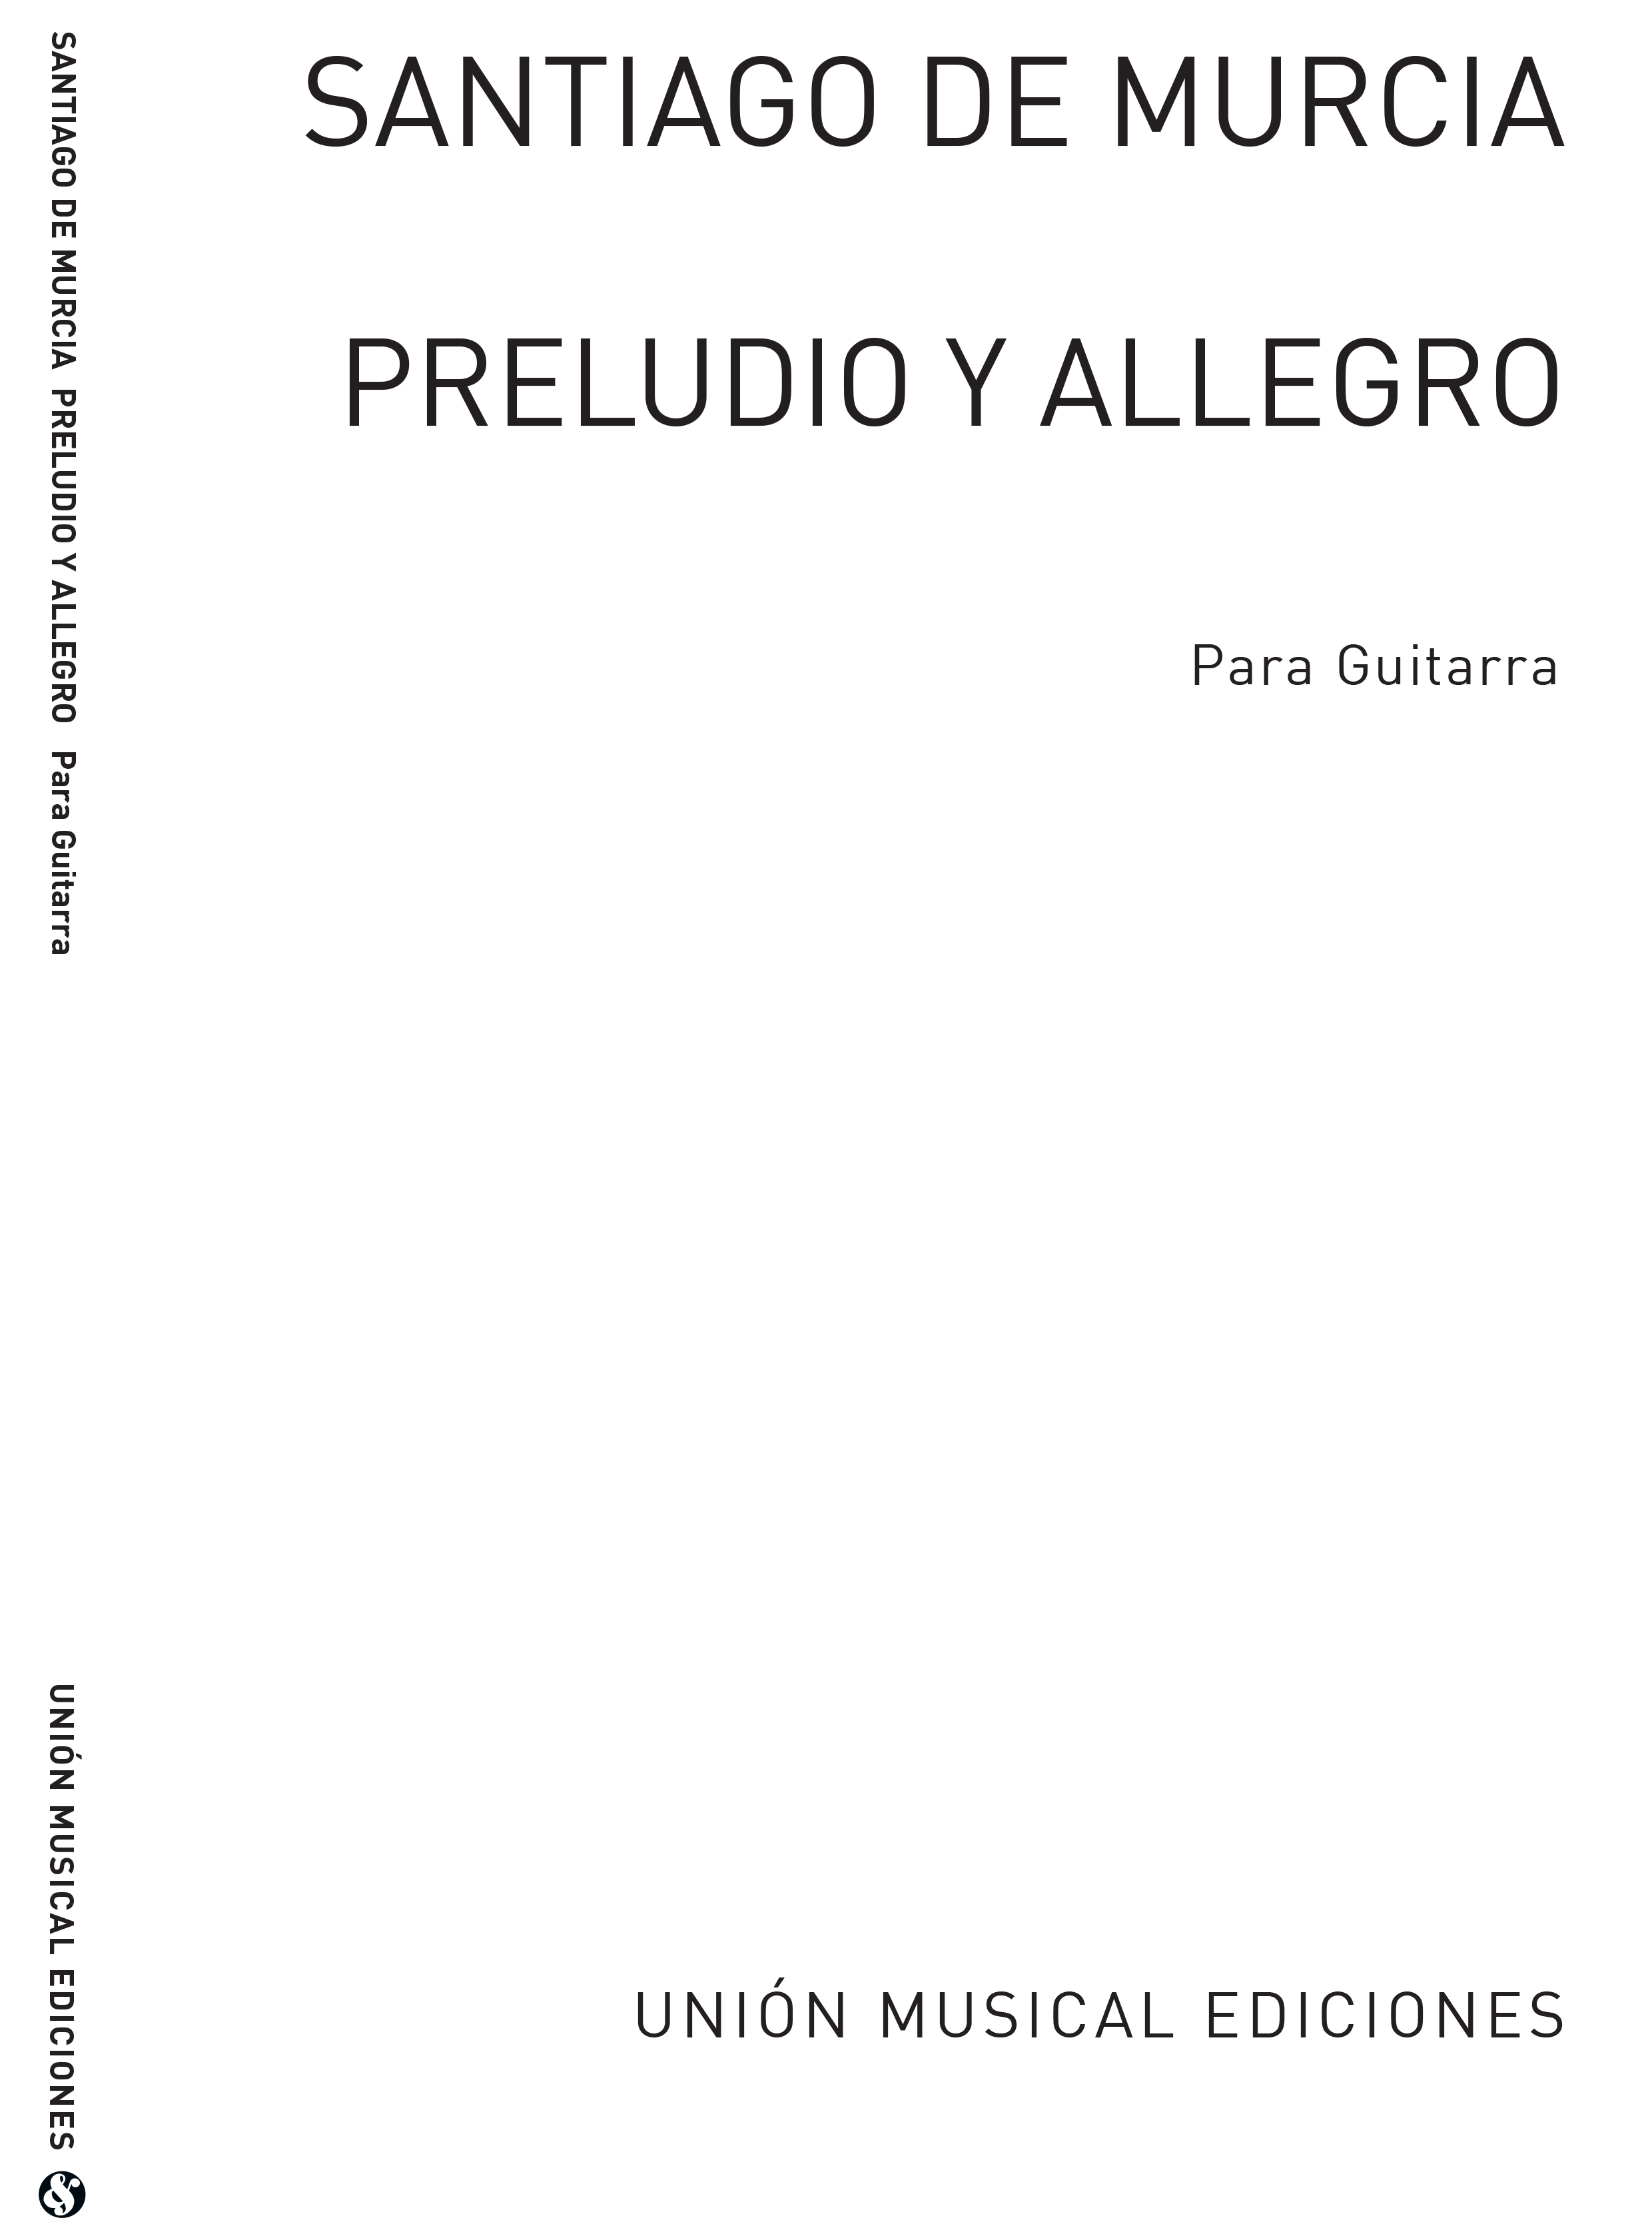 Santiago de Murcia: Preludio Y Allegro: Guitar: Instrumental Work